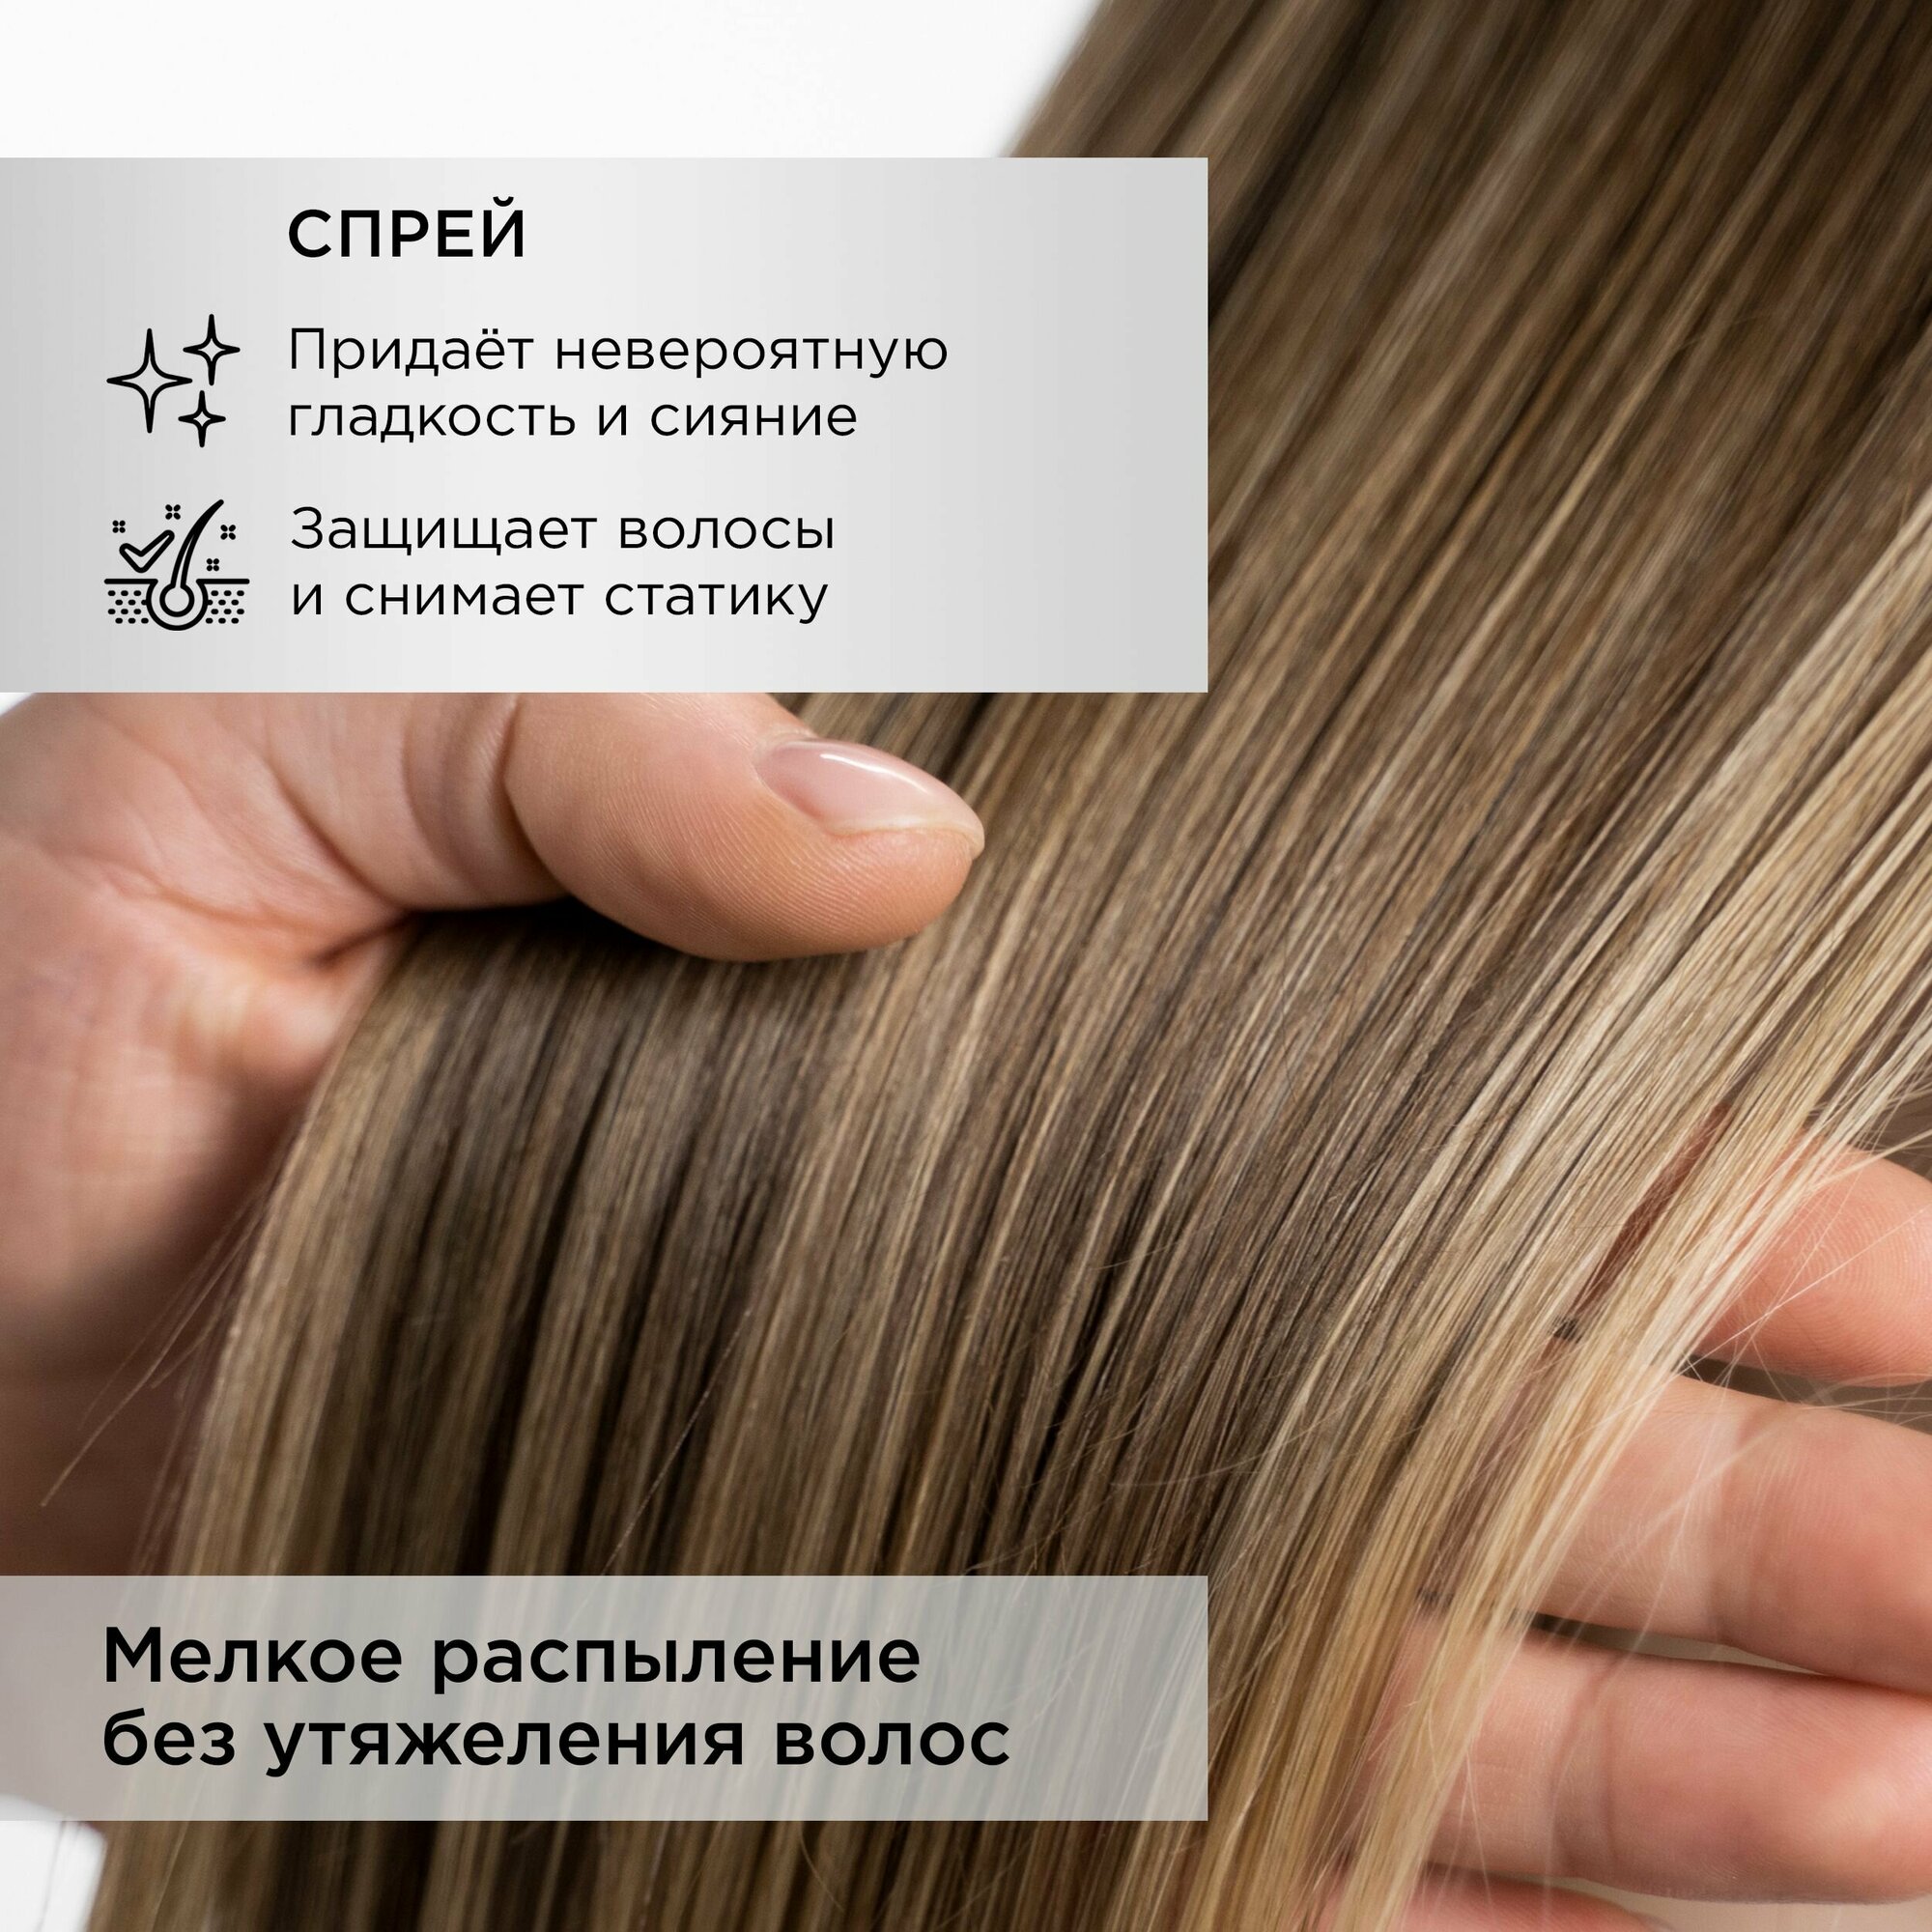 MIXIT Профессиональный набор косметики для восстановления волос: шампунь, бальзам - ополаскиватель, спрей с кератиновым комплексом HAIR EXPERT